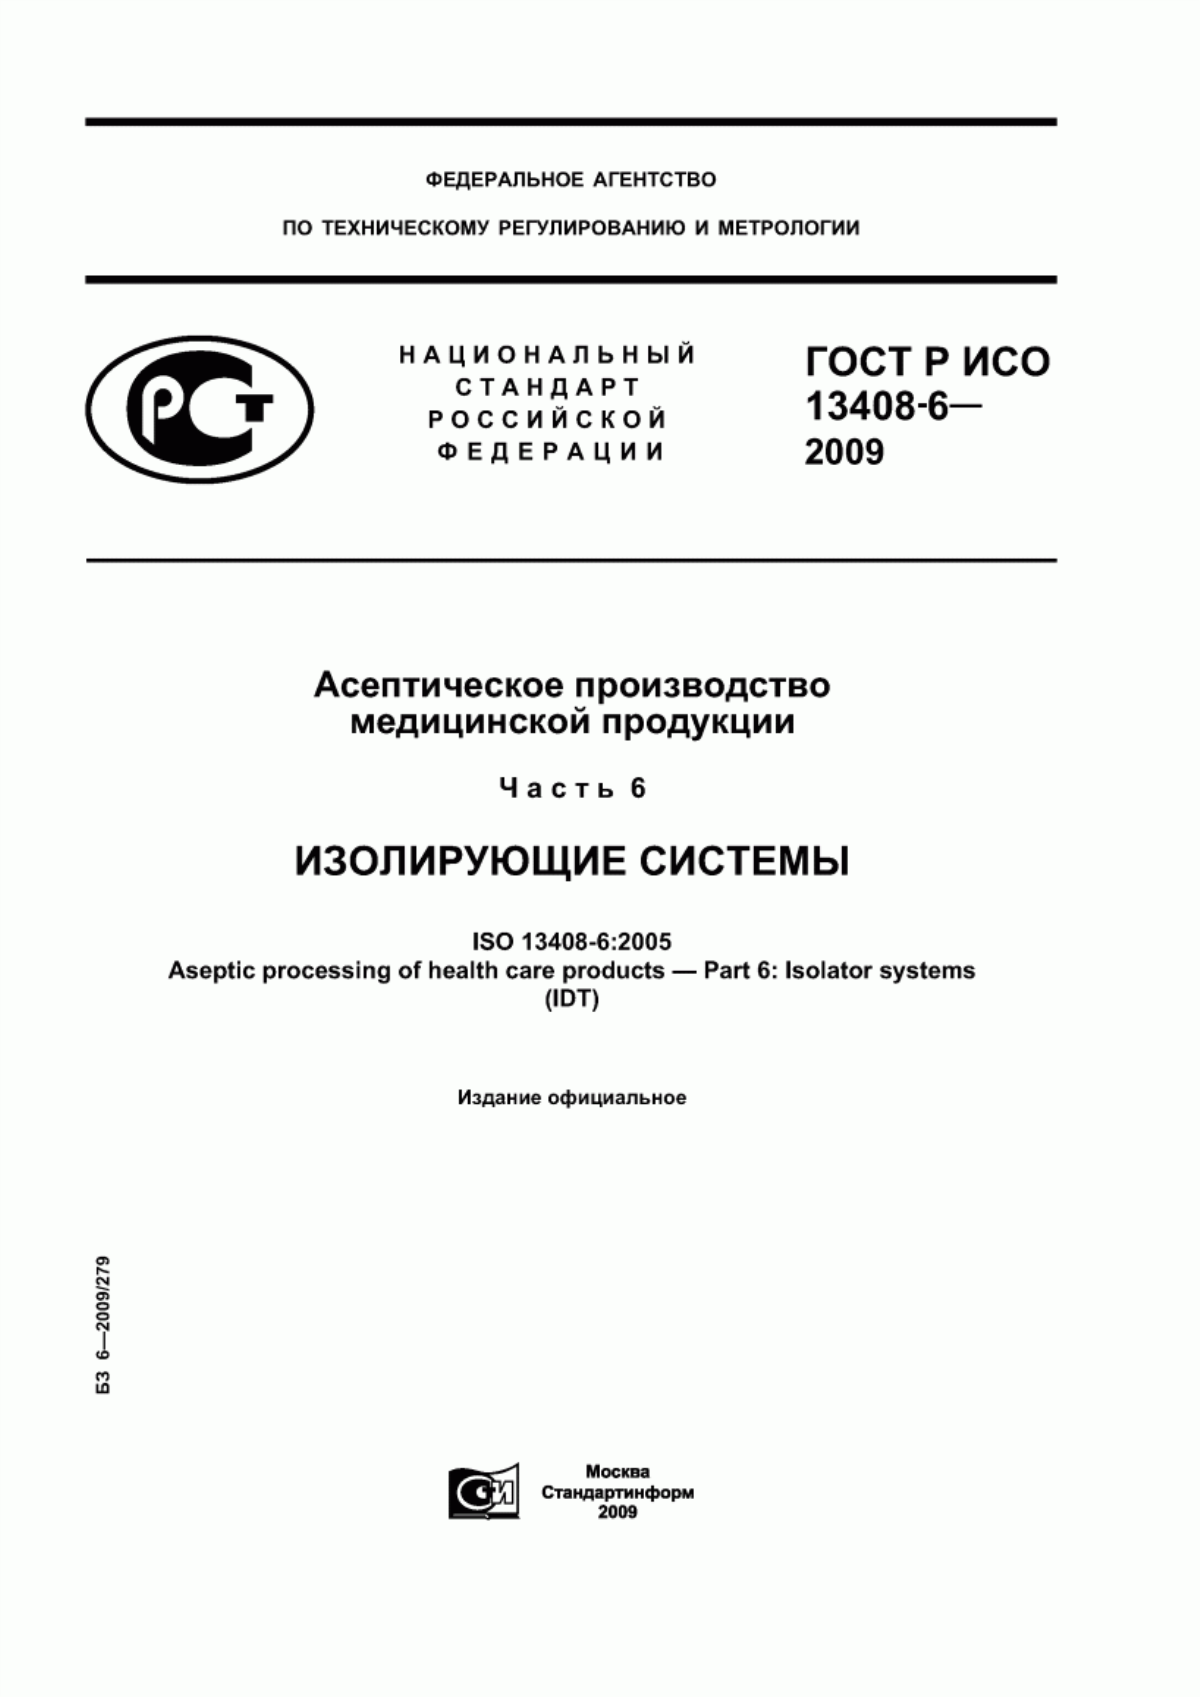 ГОСТ Р ИСО 13408-6-2009 Асептическое производство медицинской продукции. Часть 6. Изолирующие системы